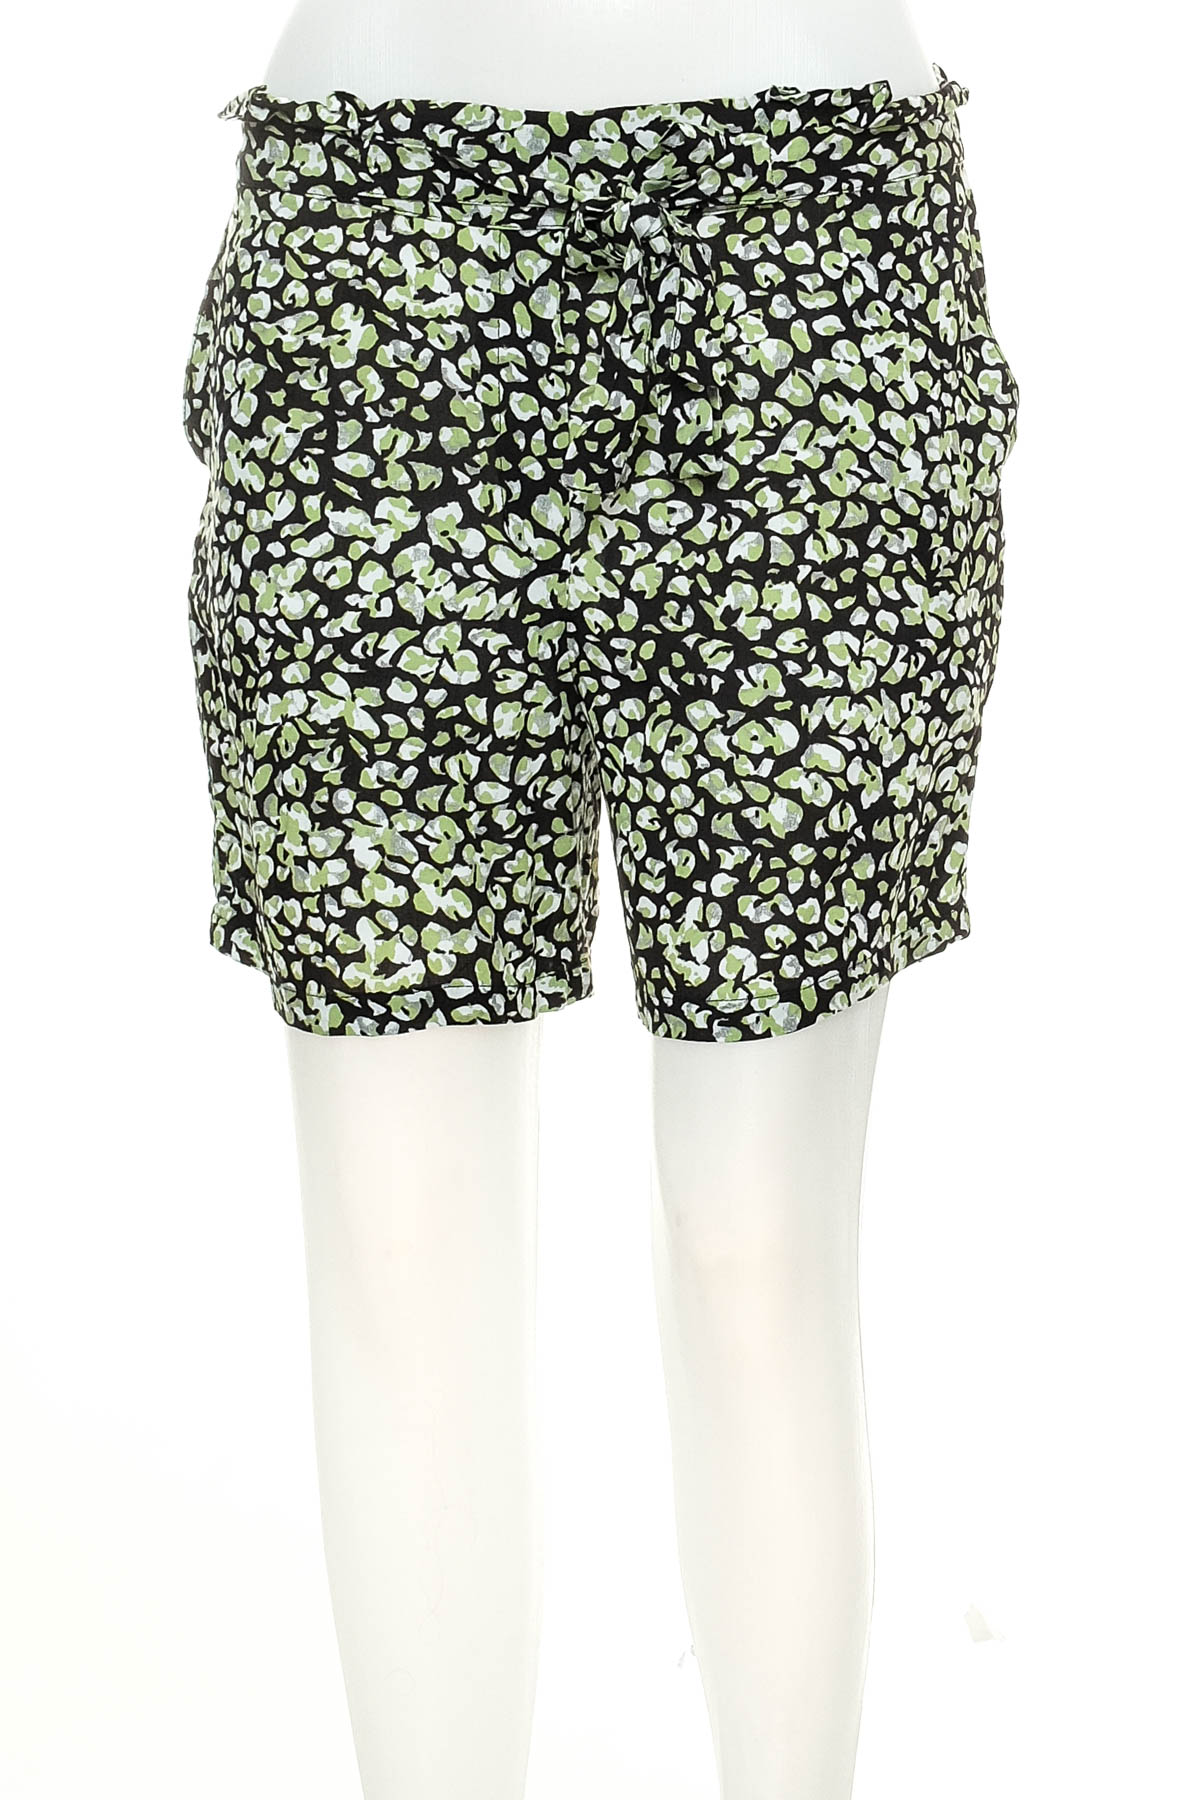 Female shorts - Garcia - 0